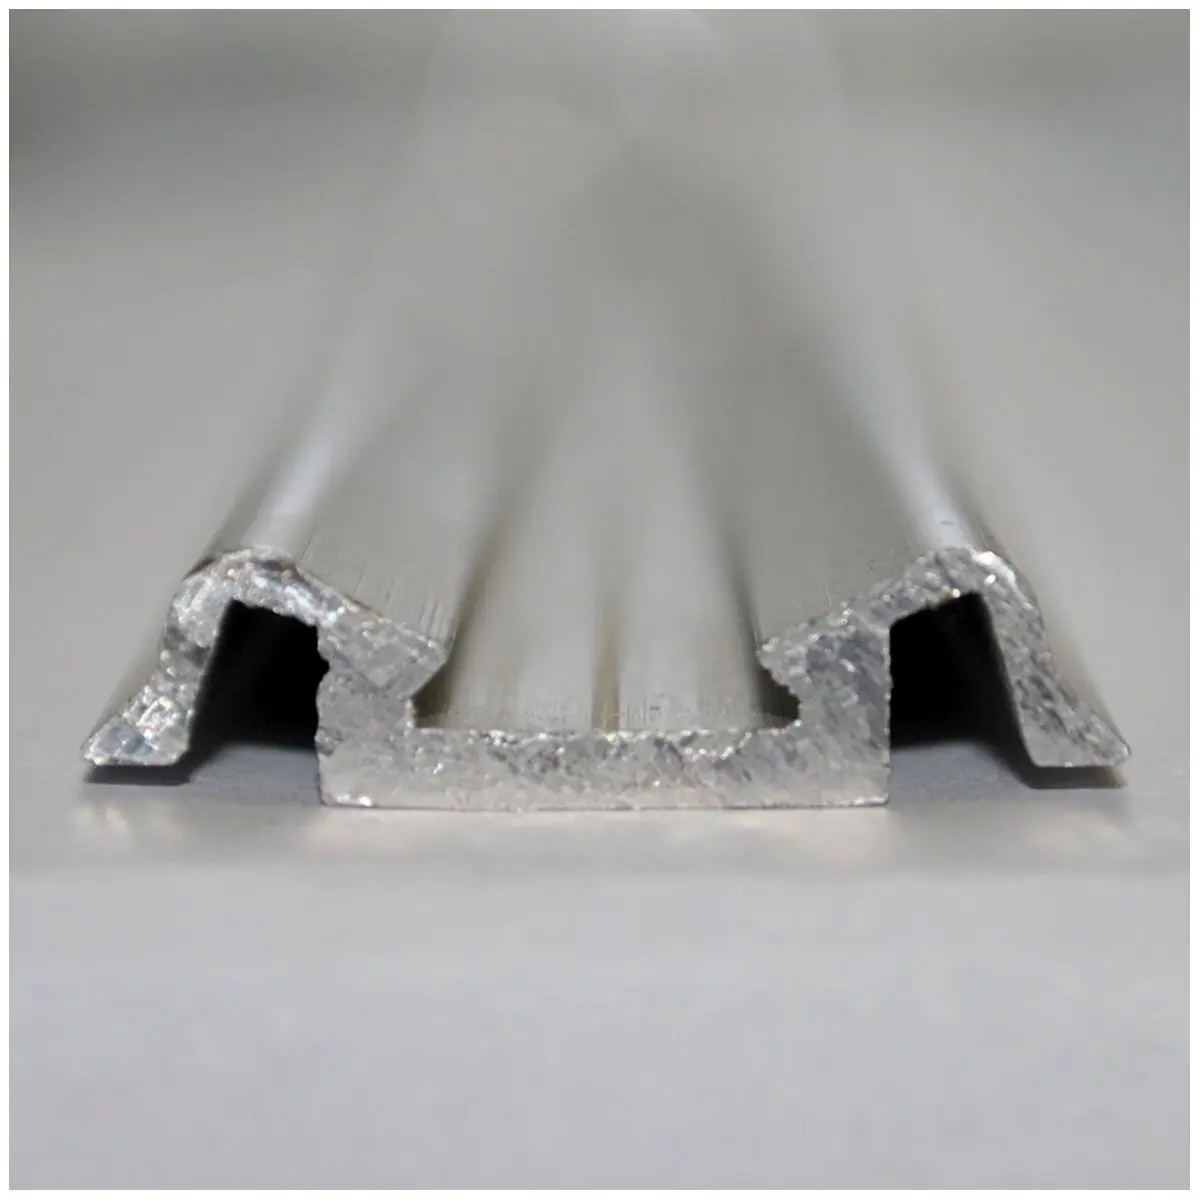 Friză/bandă centrală - argintie cu o canelură pentru umpluturi în bandă